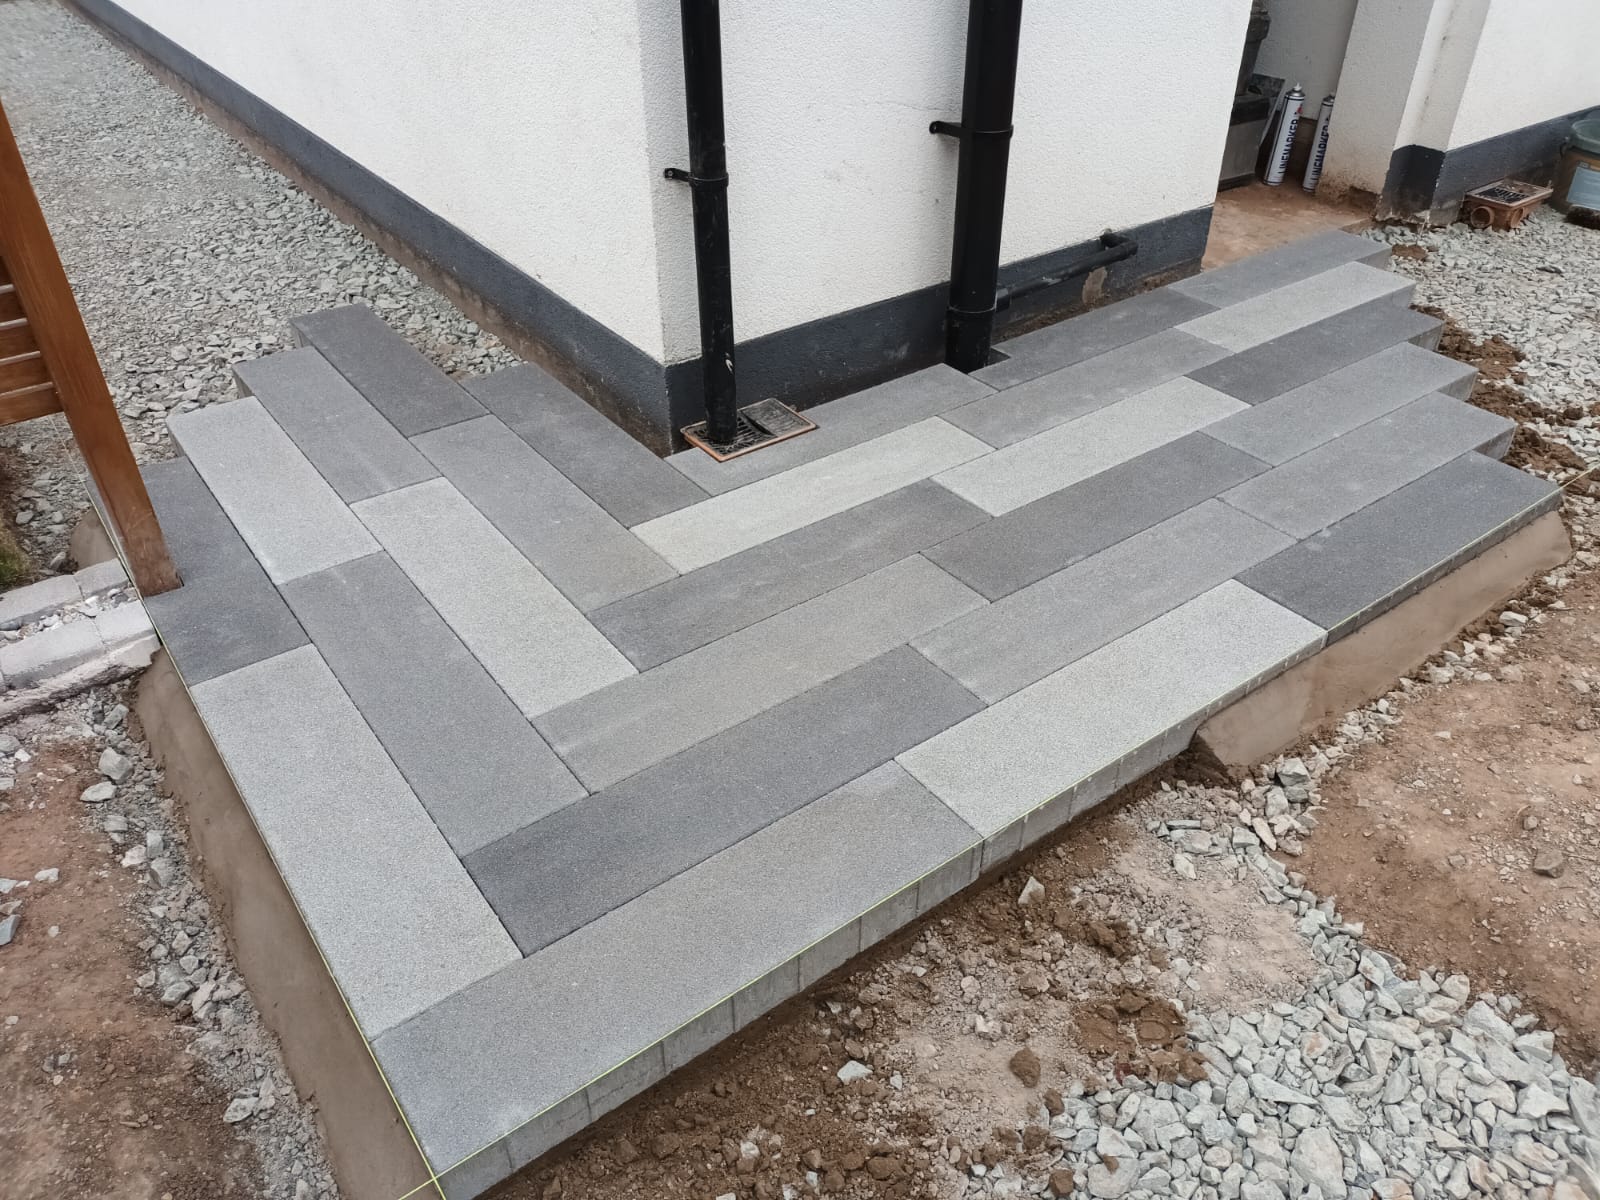 Concrete blocks on corner pathway